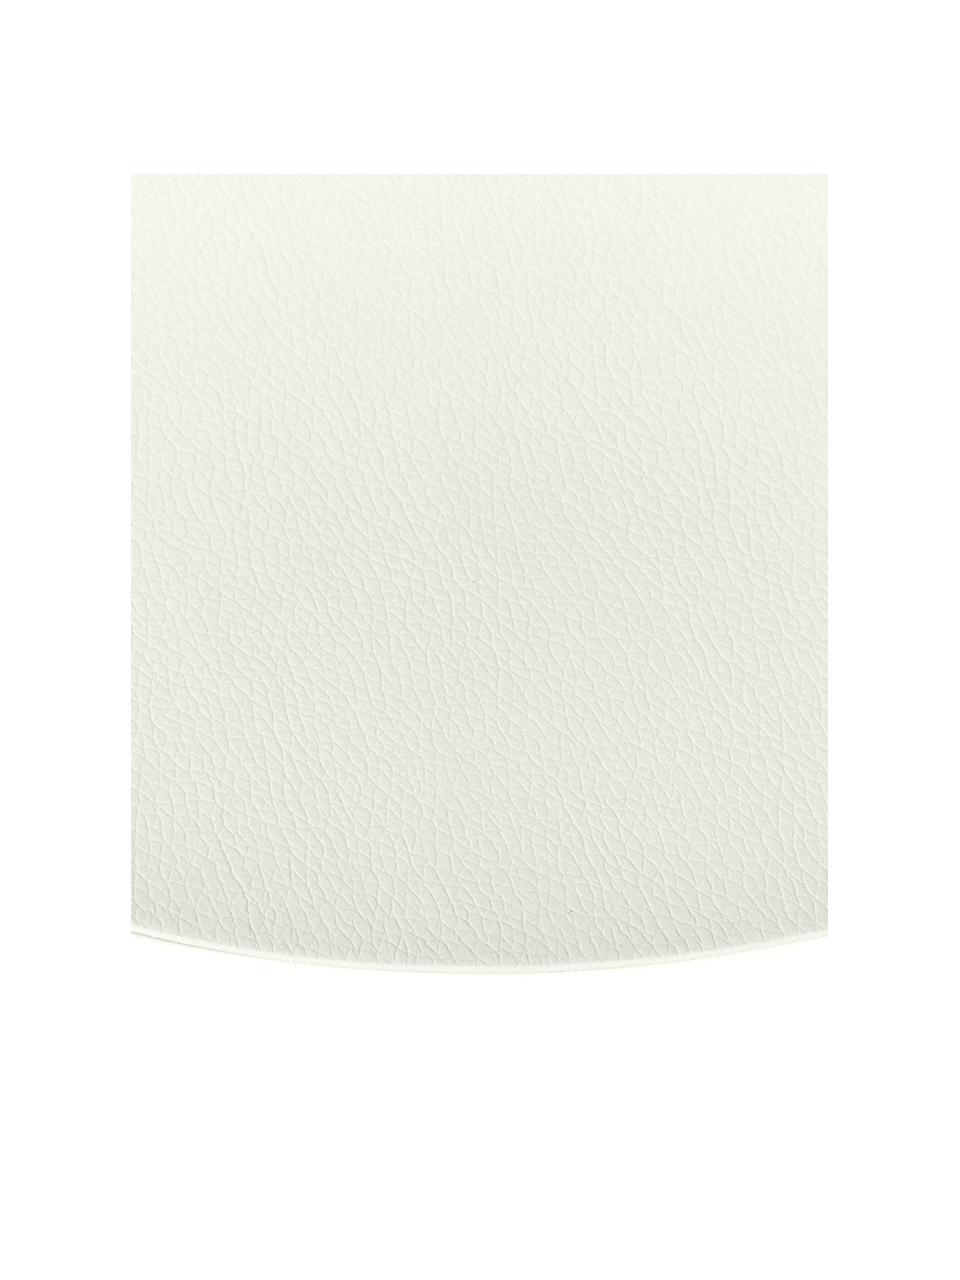 Tovaglietta americana rotonda in similpelle Pik 2 pz, Materiale sintetico (PVC), Bianco, Ø 38 cm